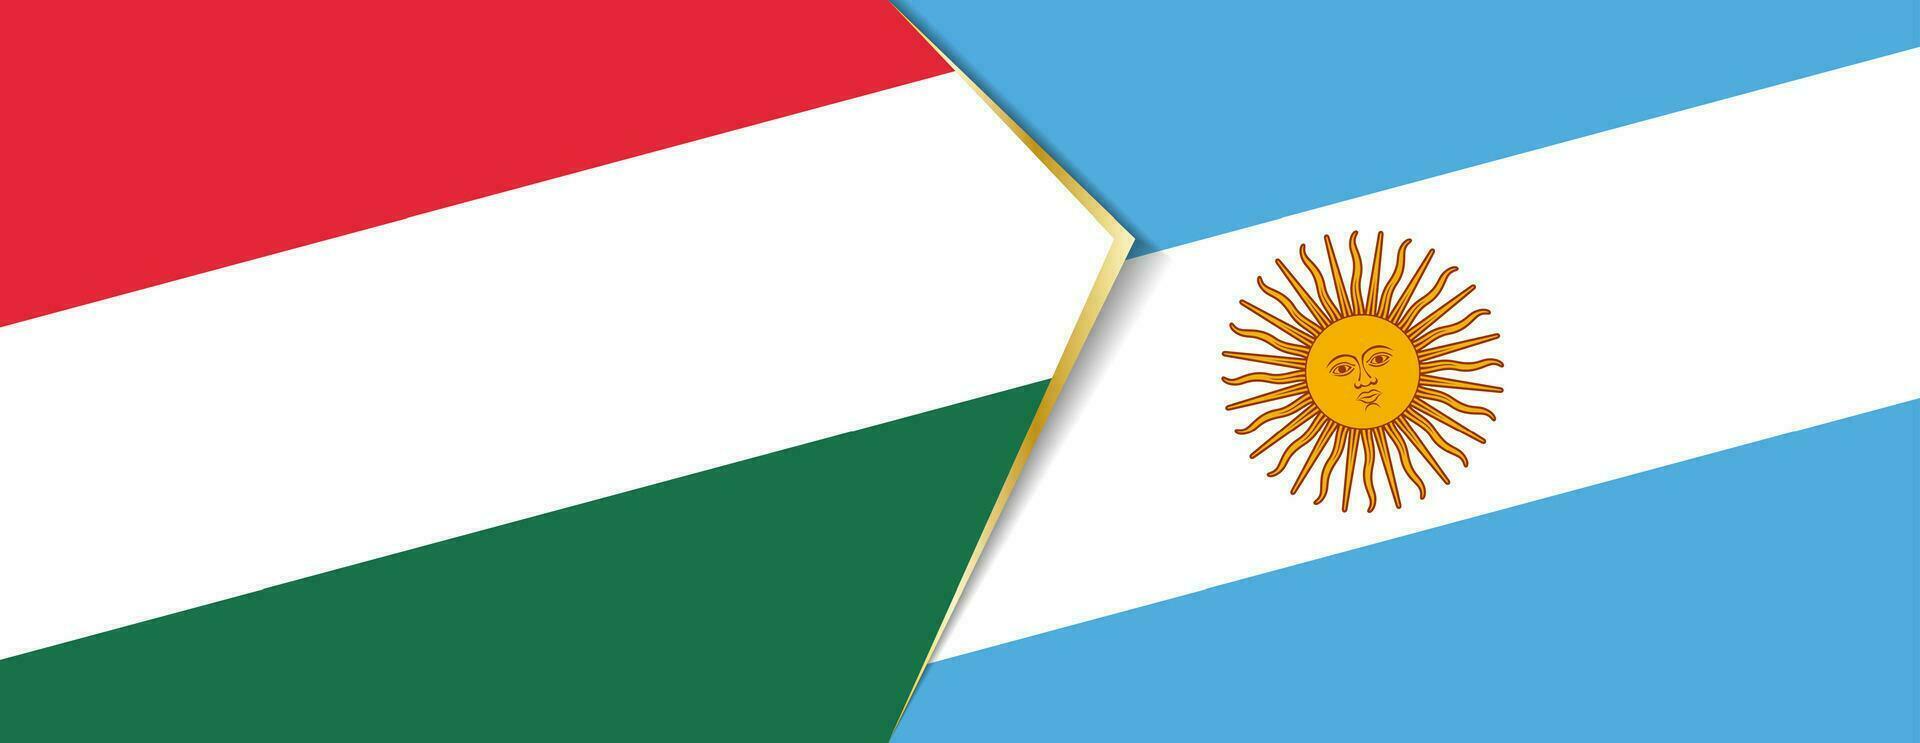 ungern och argentina flaggor, två vektor flaggor.